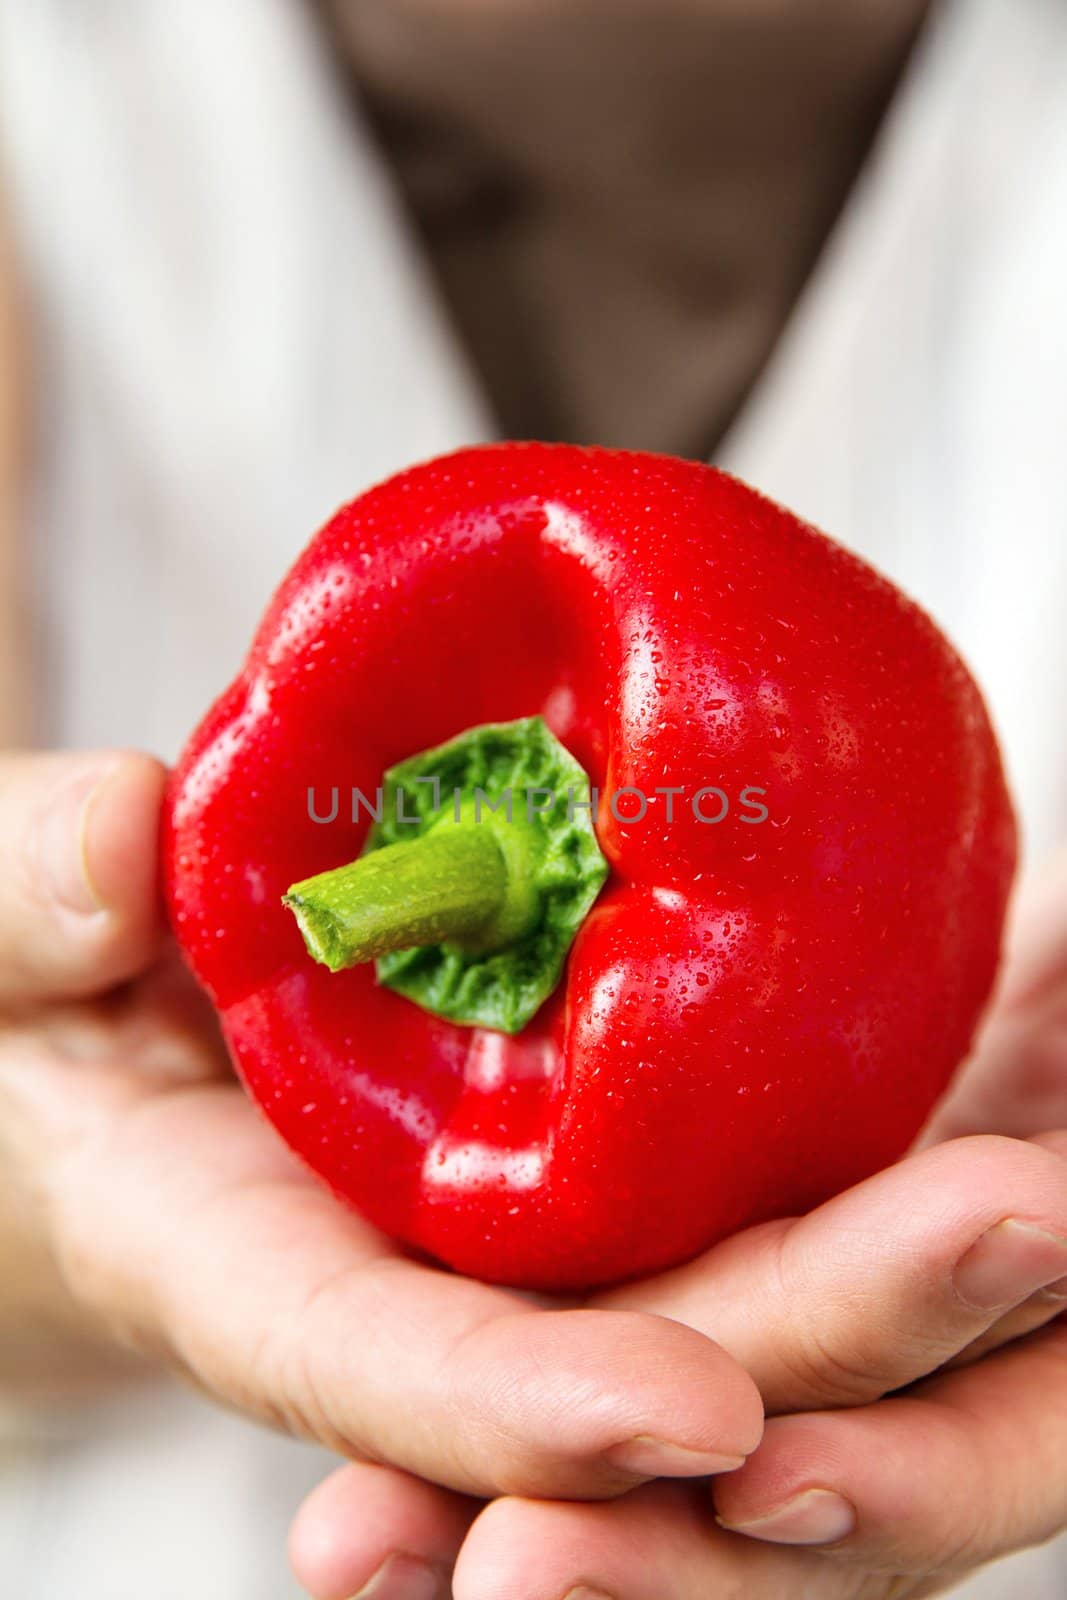 hand holding sweet pepper